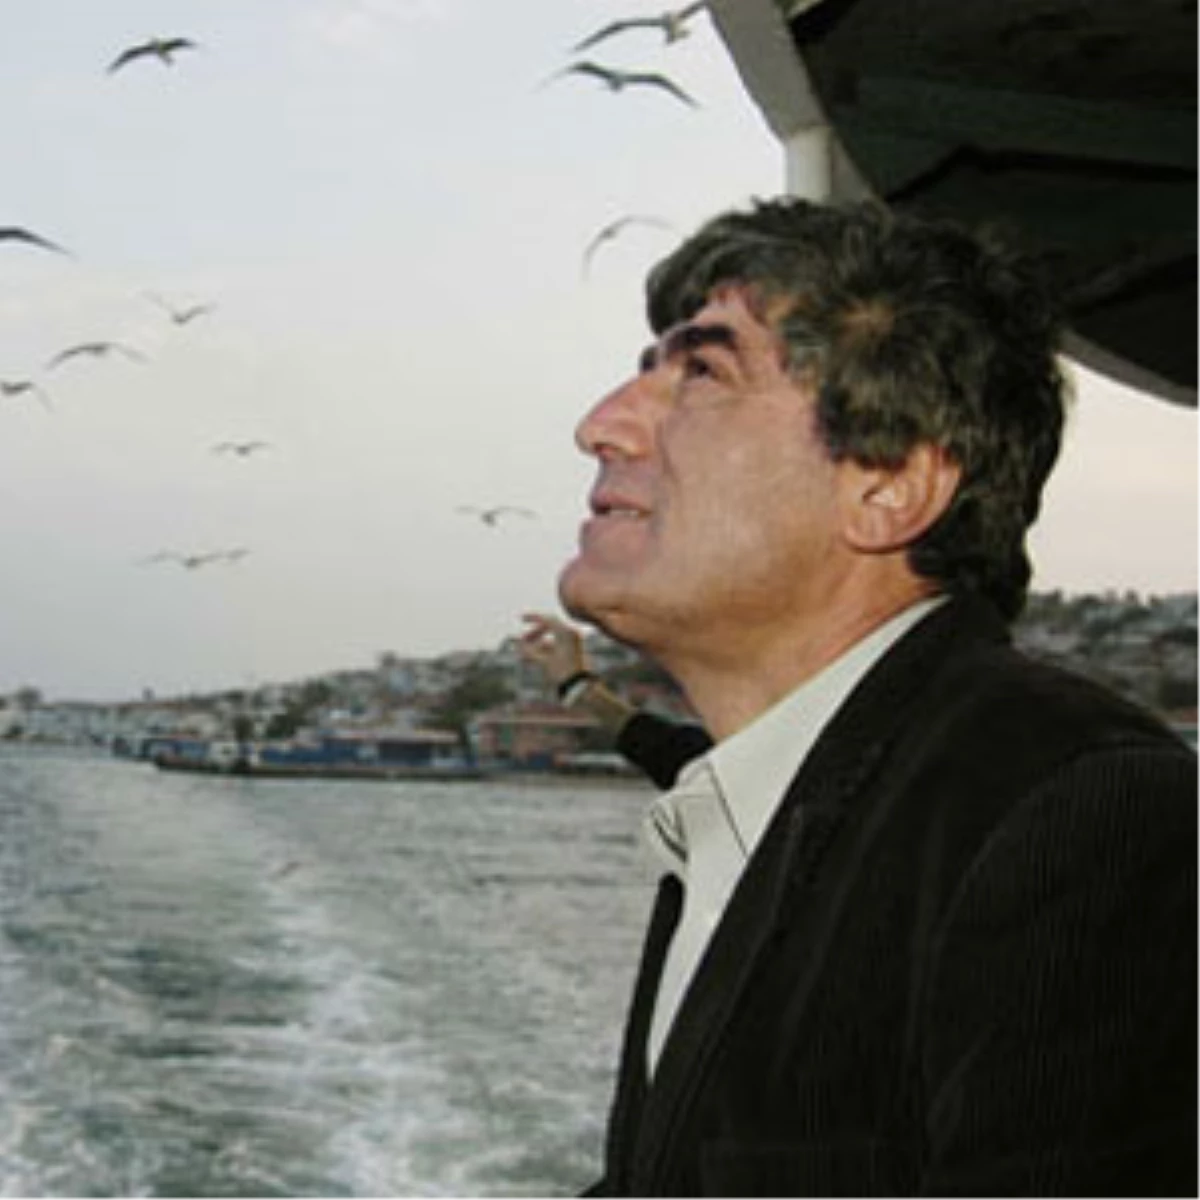 Hrant Dink Ödülleri Sahiplerini Buldu